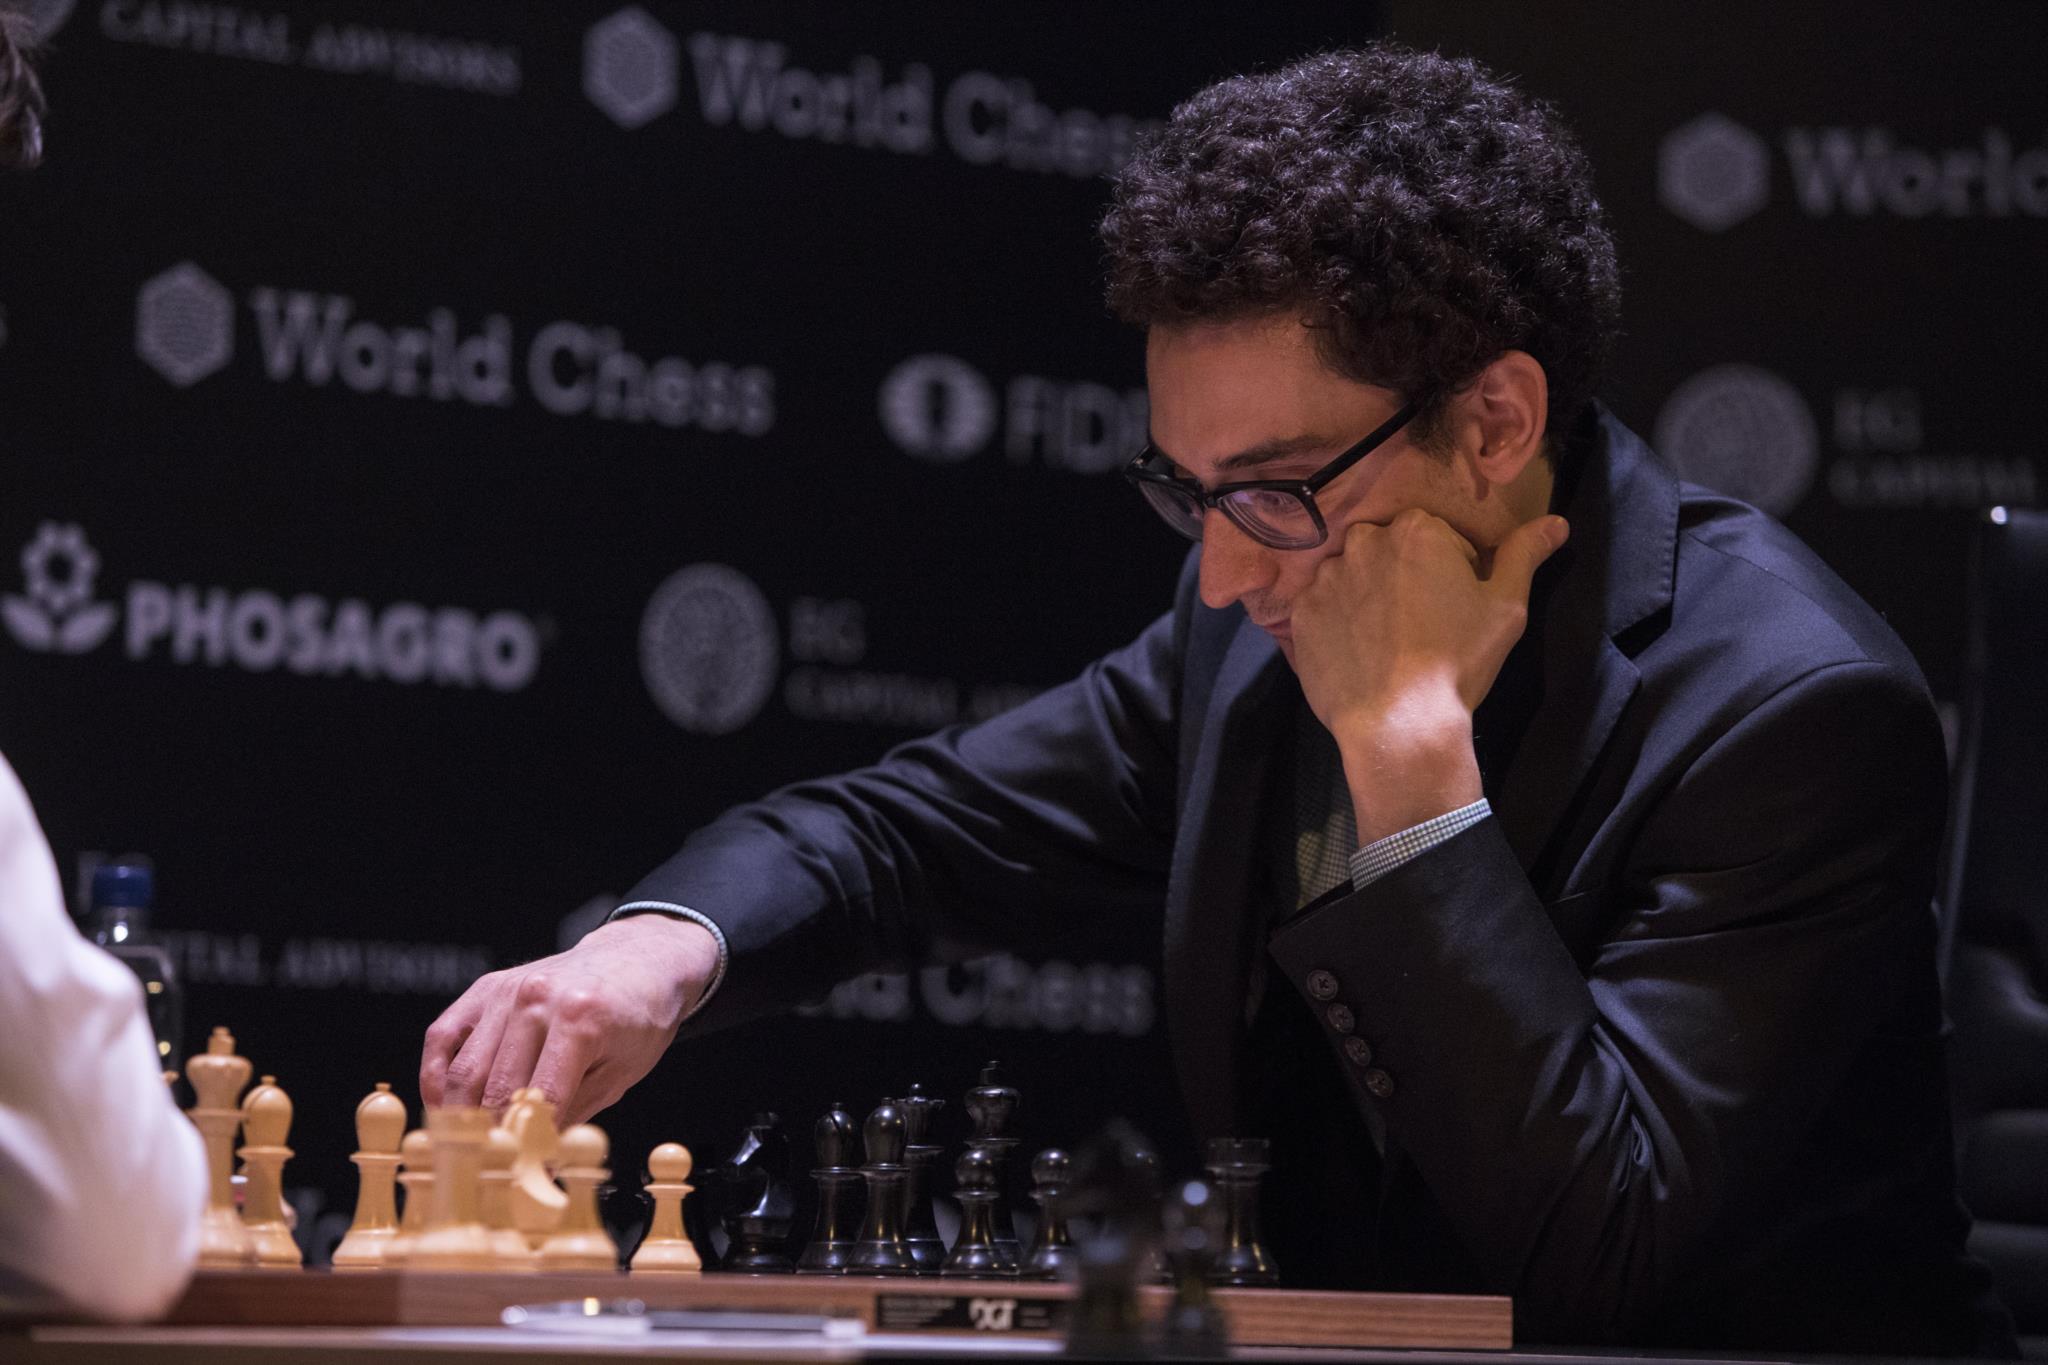 Torneio de Candidatos 2018: Fabiano Caruana é o Desafiante!